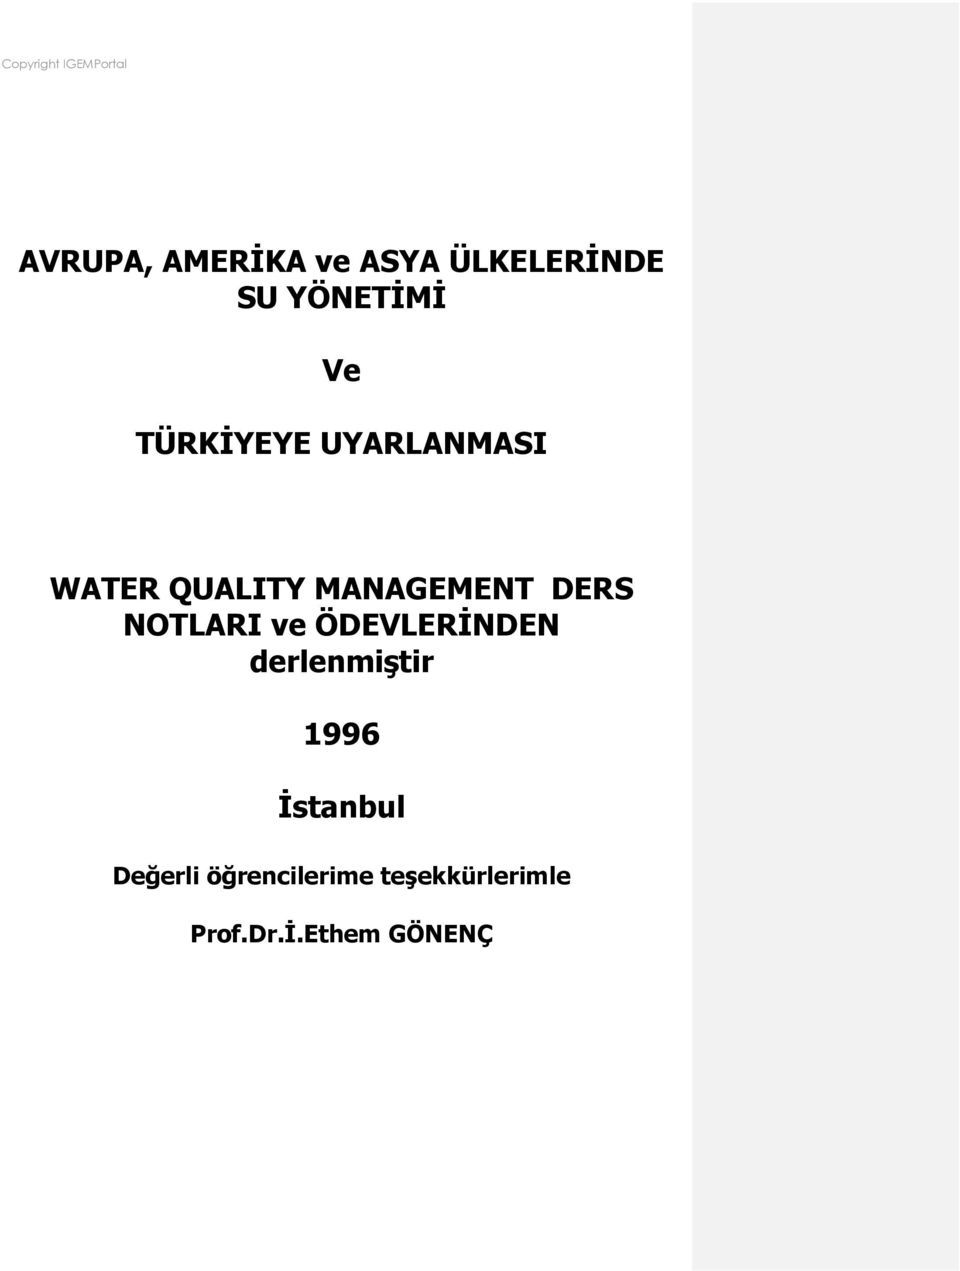 NOTLARI ve ÖDEVLERİNDEN derlenmiştir 1996 İstanbul